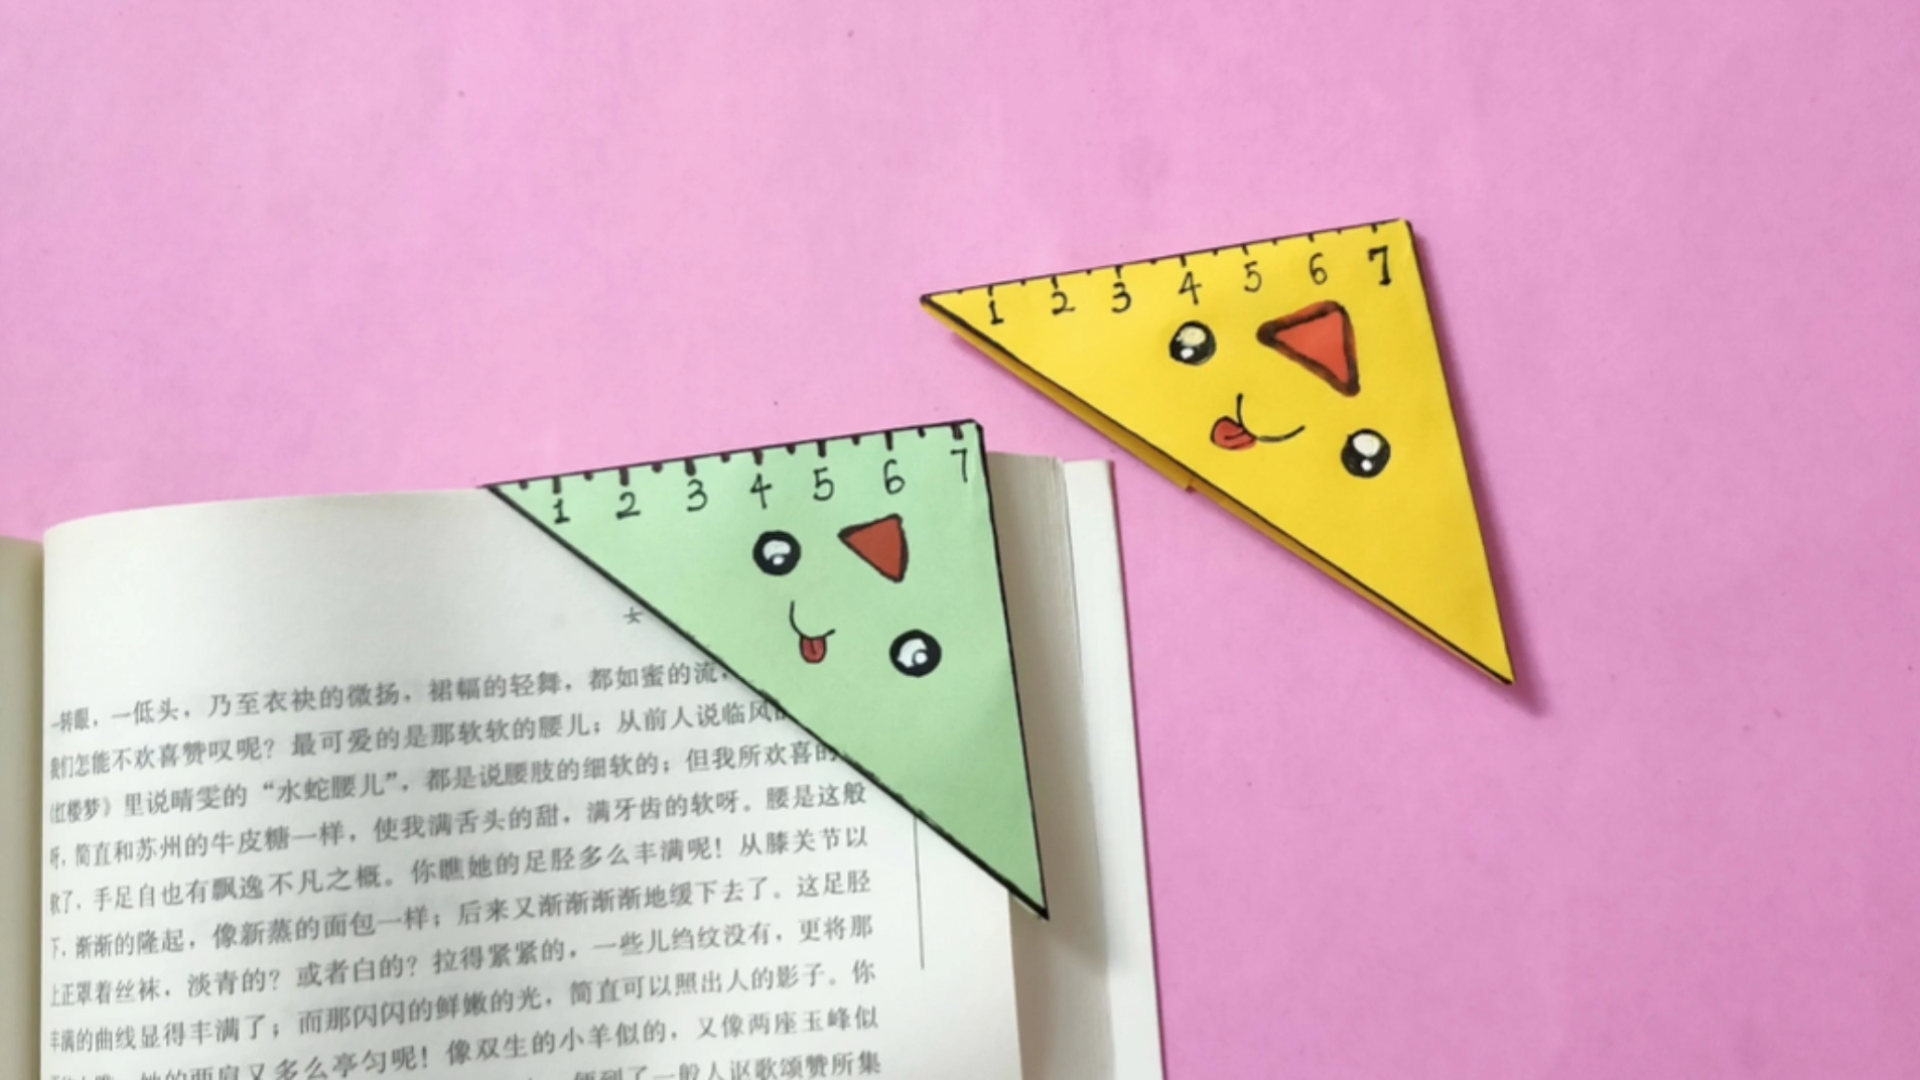 三角形书签的制作方法图片